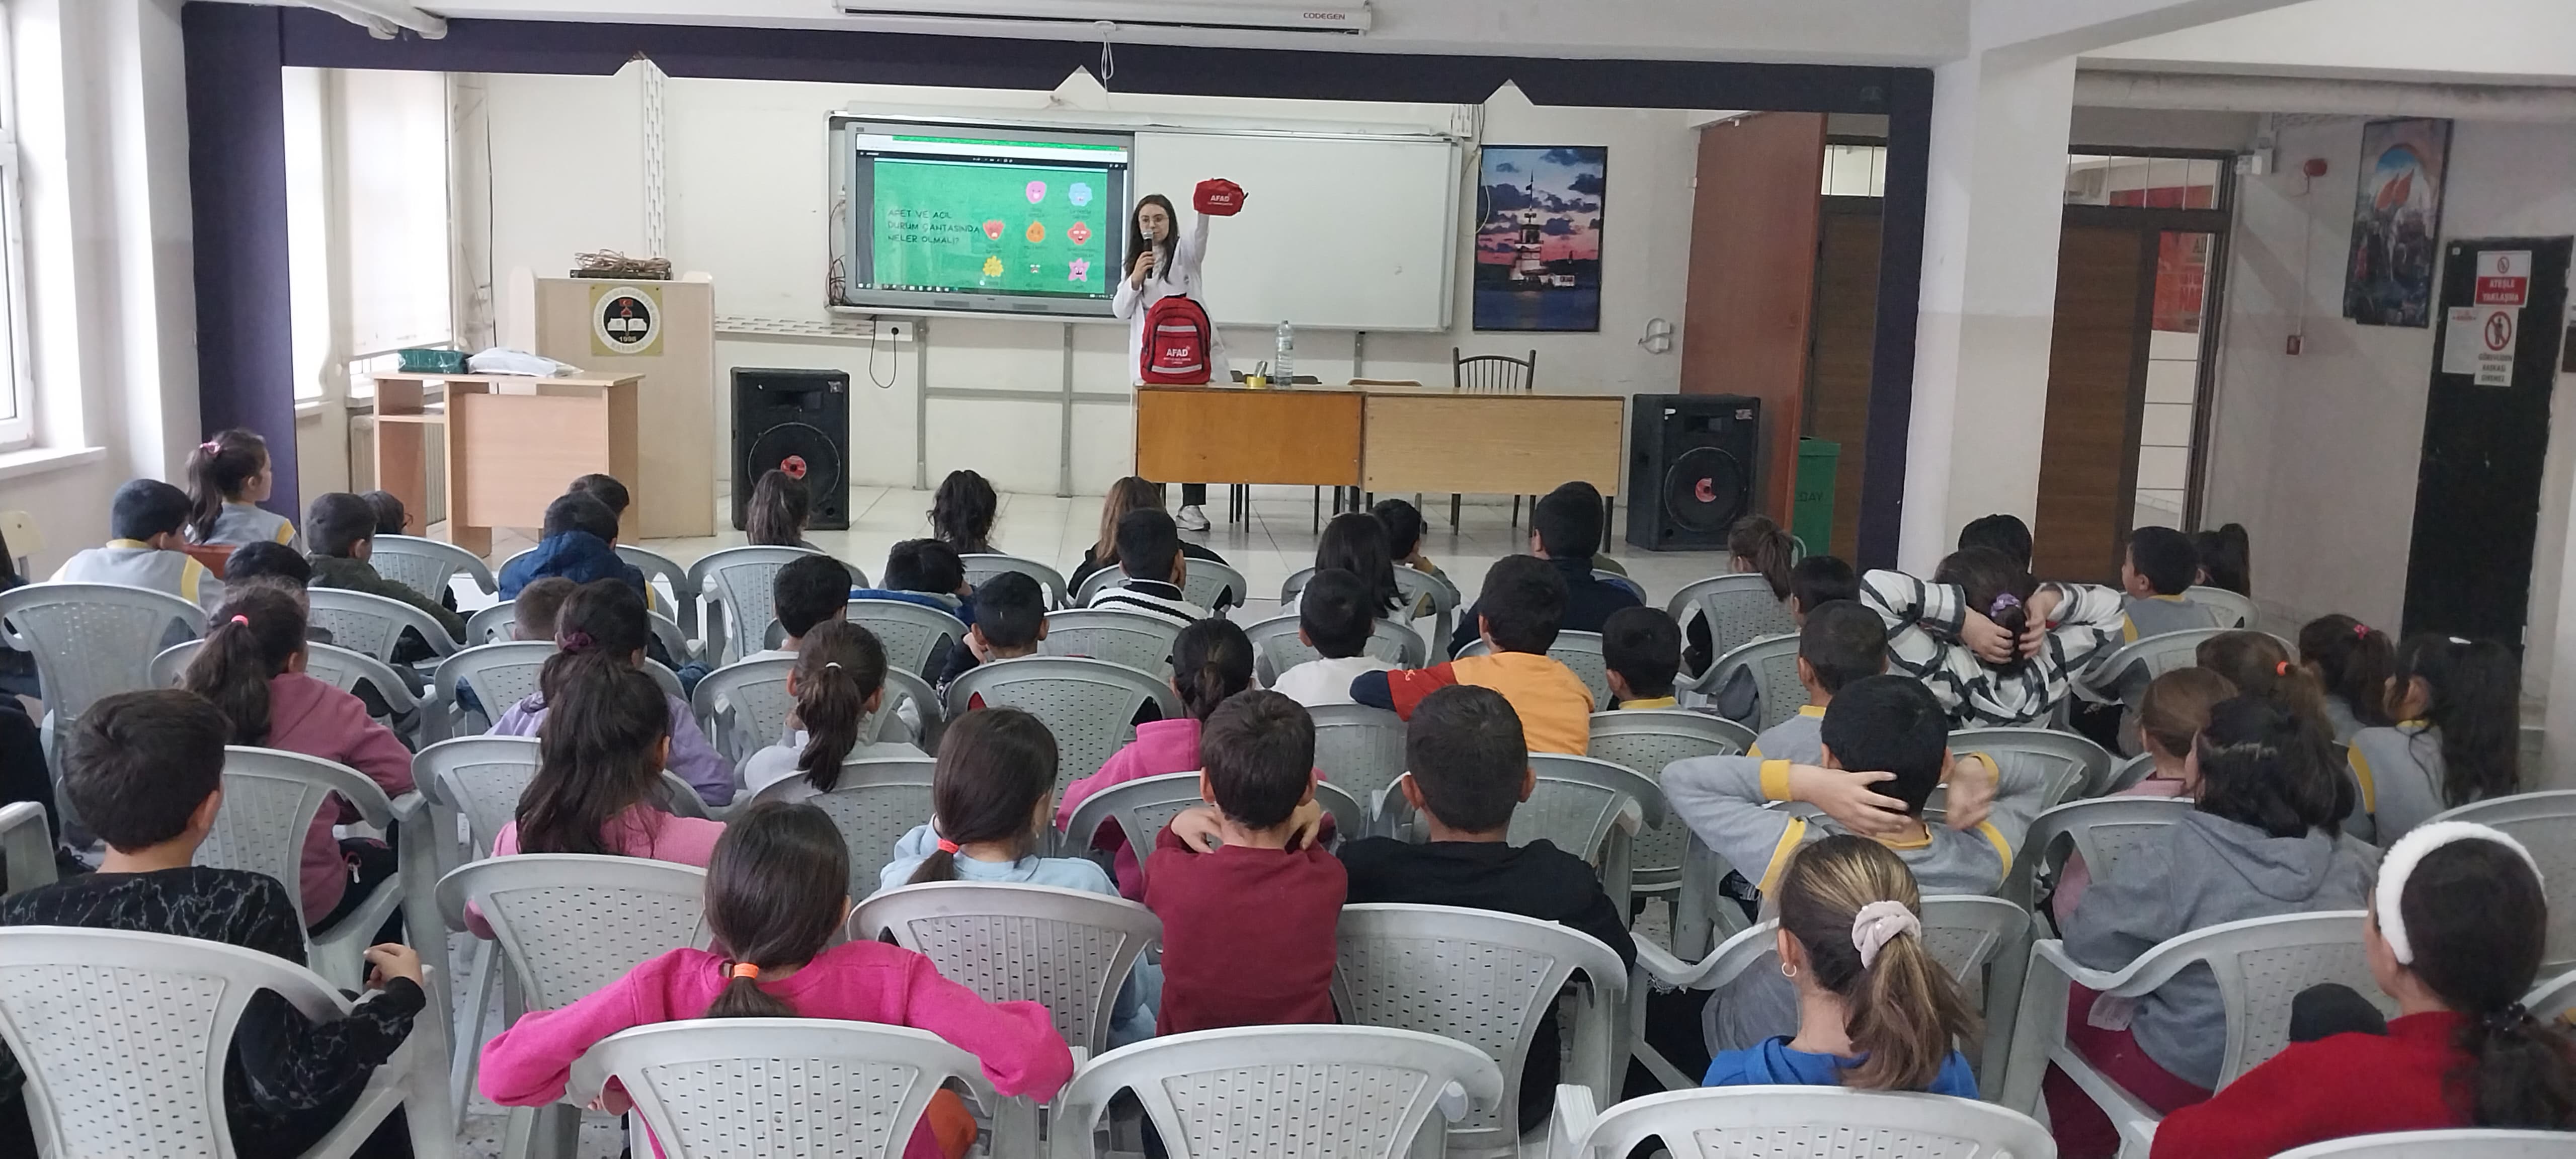 Kayseri Büyükşehir, 3 ayda 7 bin öğrenciye “afet” konulu eğitim verdi